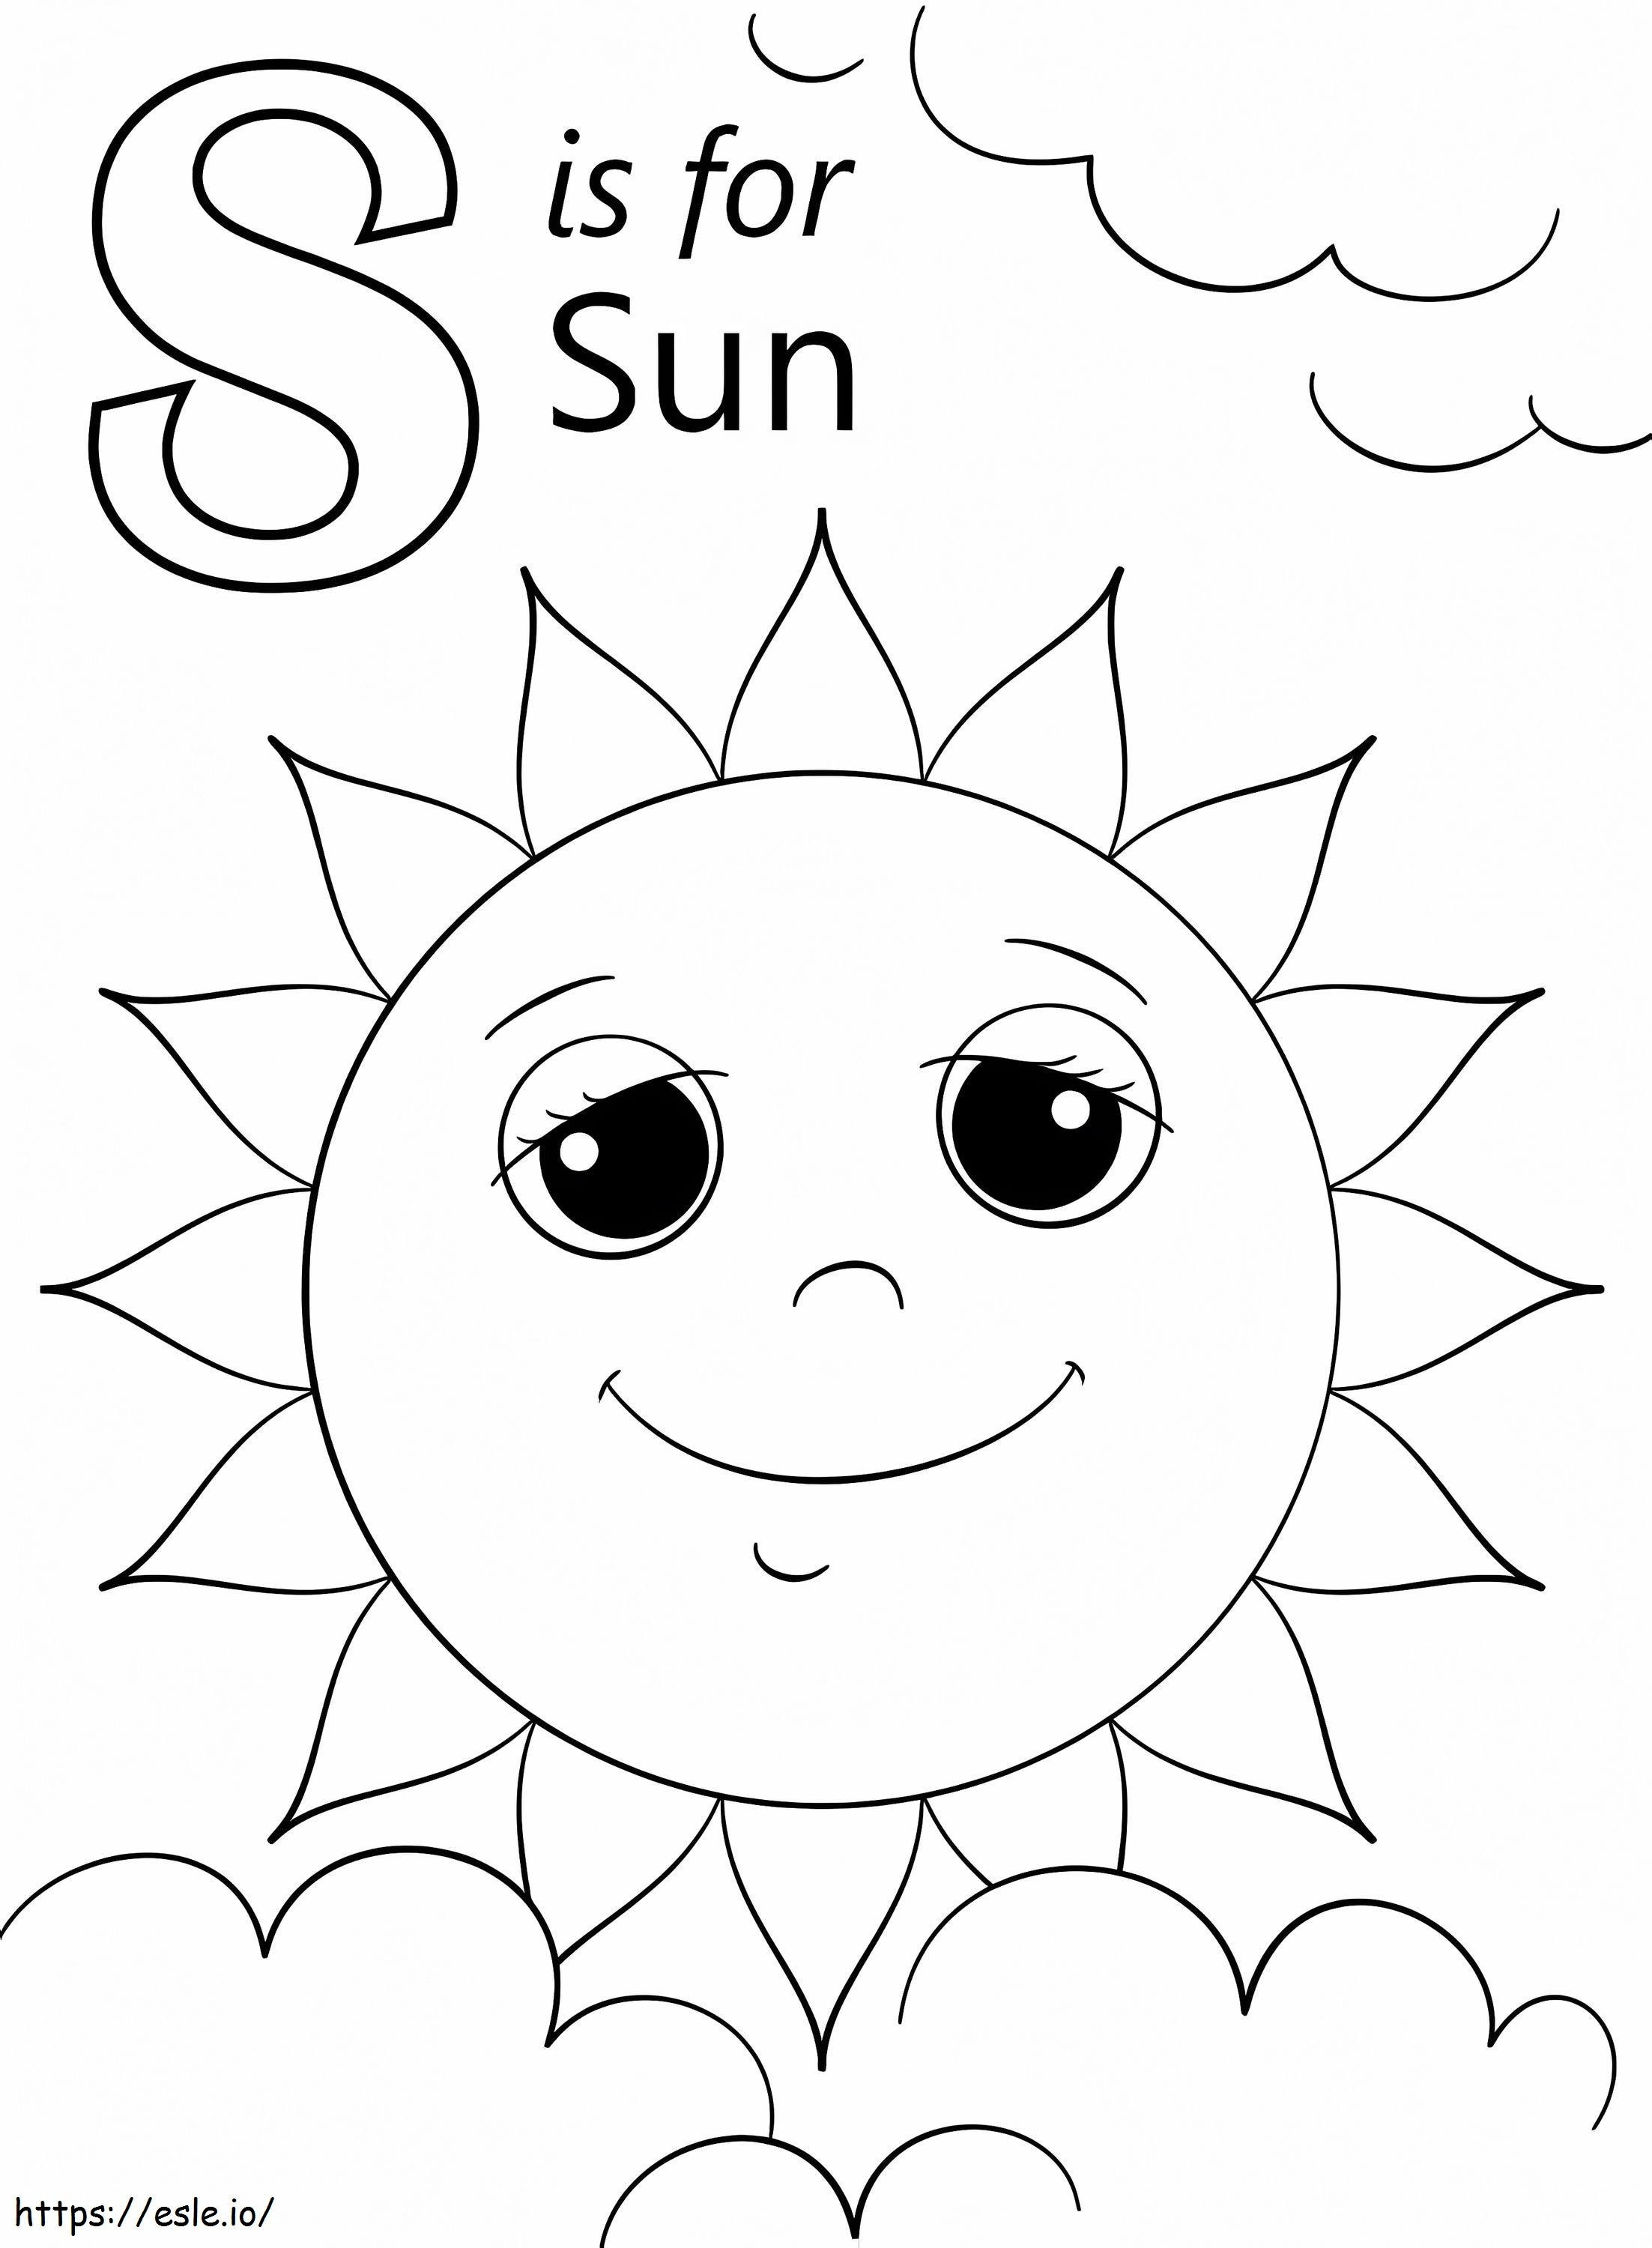 Sonnenbuchstabe S ausmalbilder